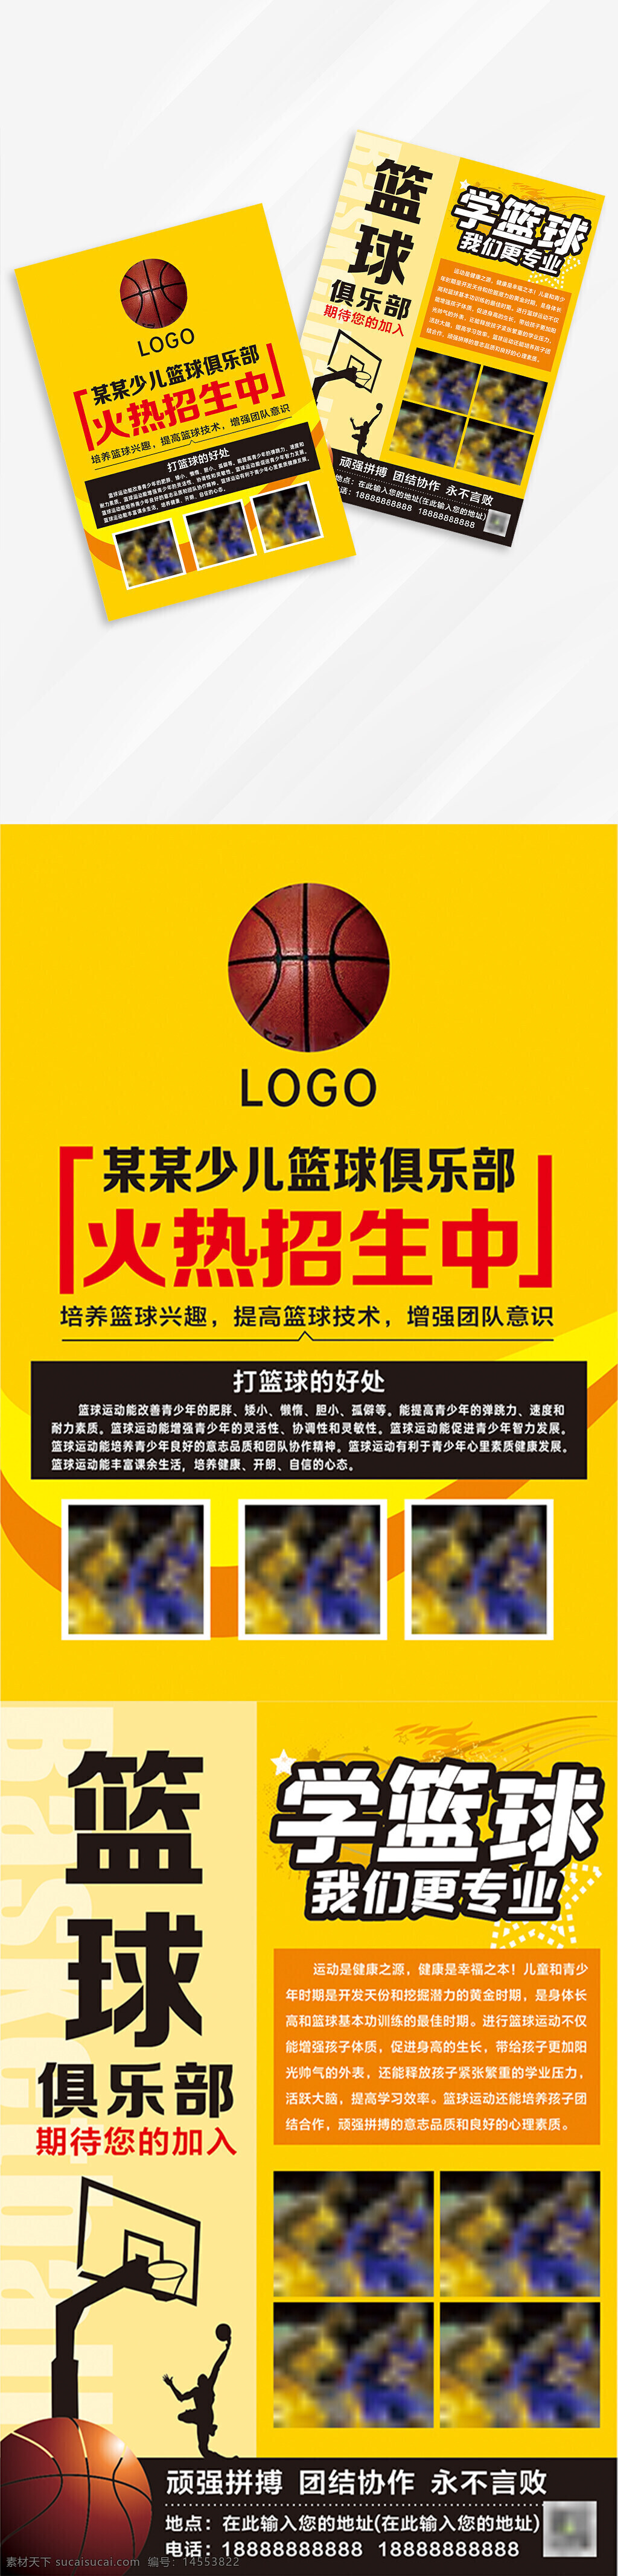 篮球宣传单 篮球运动